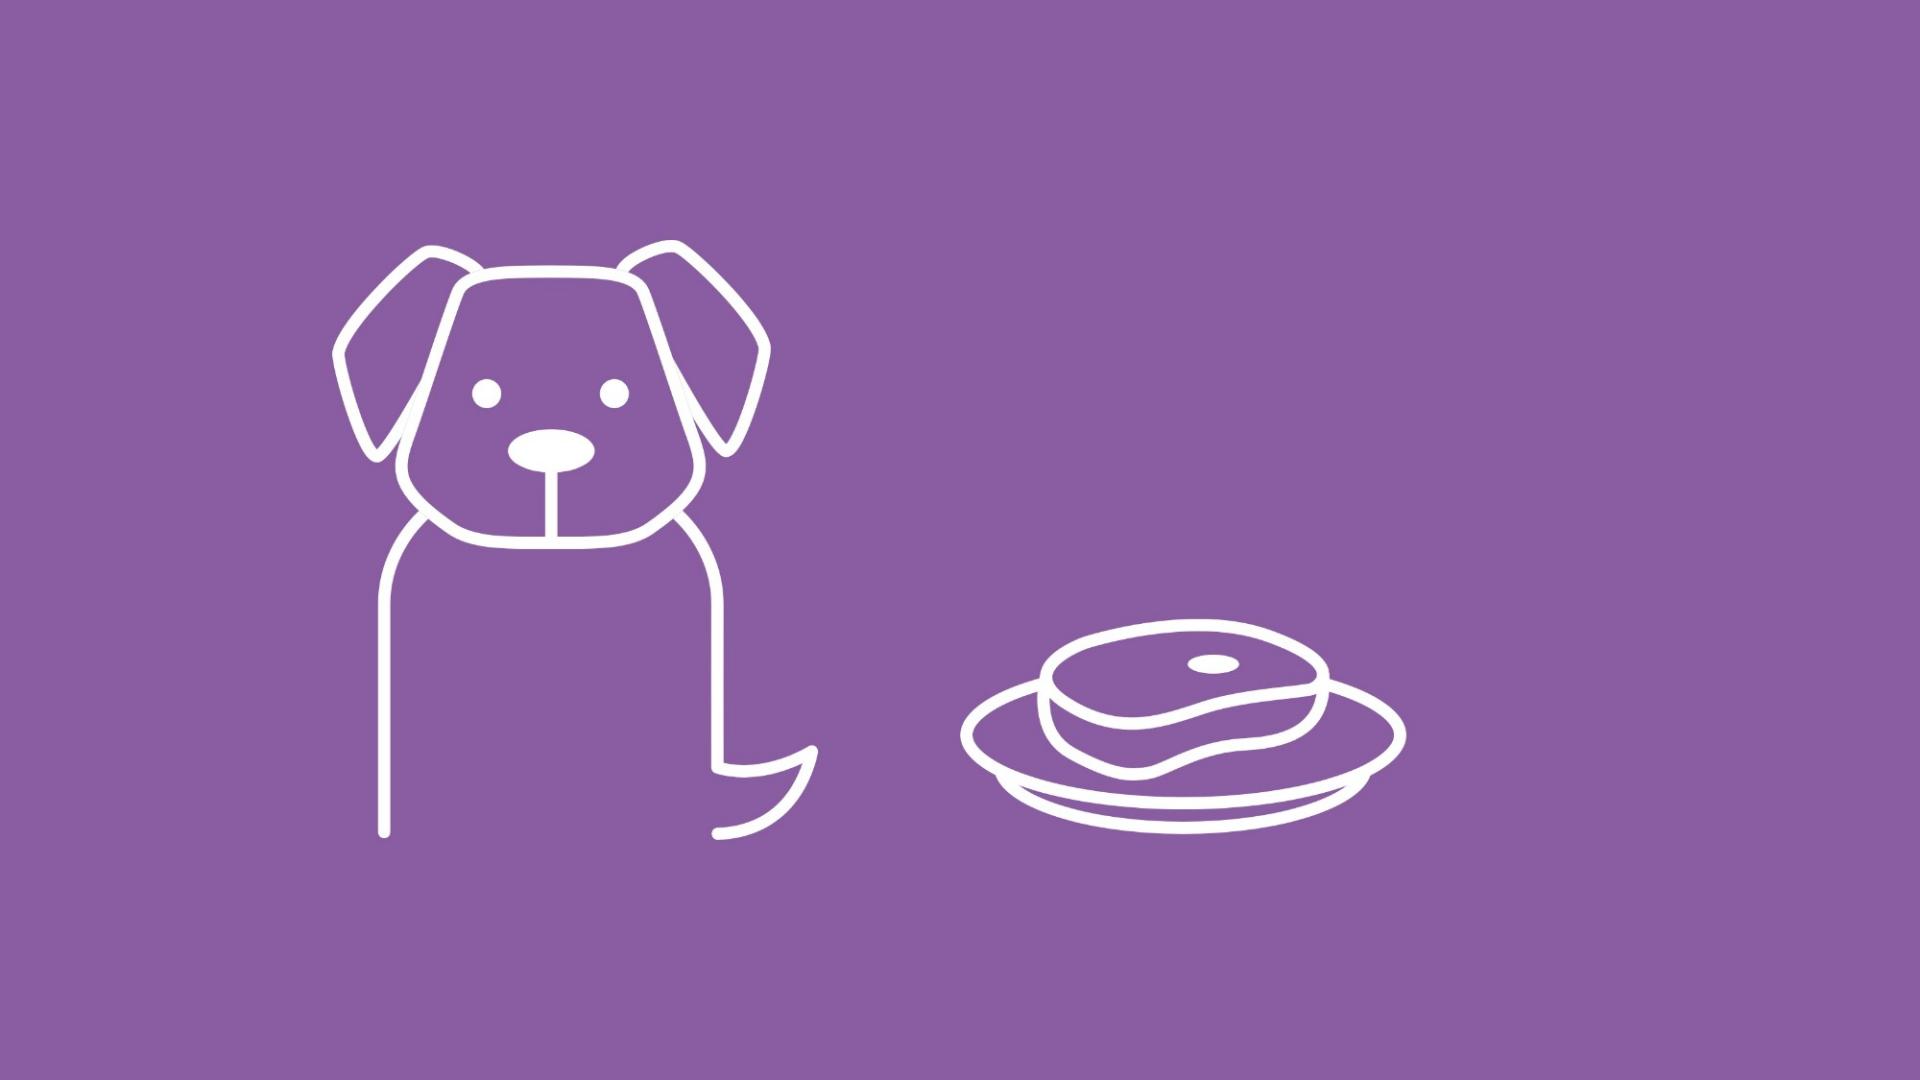 Die Grafik zeigt mittig einen Hund. Um ihn herum sind in Form von Icons verschiedene Futtermittel platziert: Fleisch, Fisch, Dosenfutter, Obst und Gemüse. 